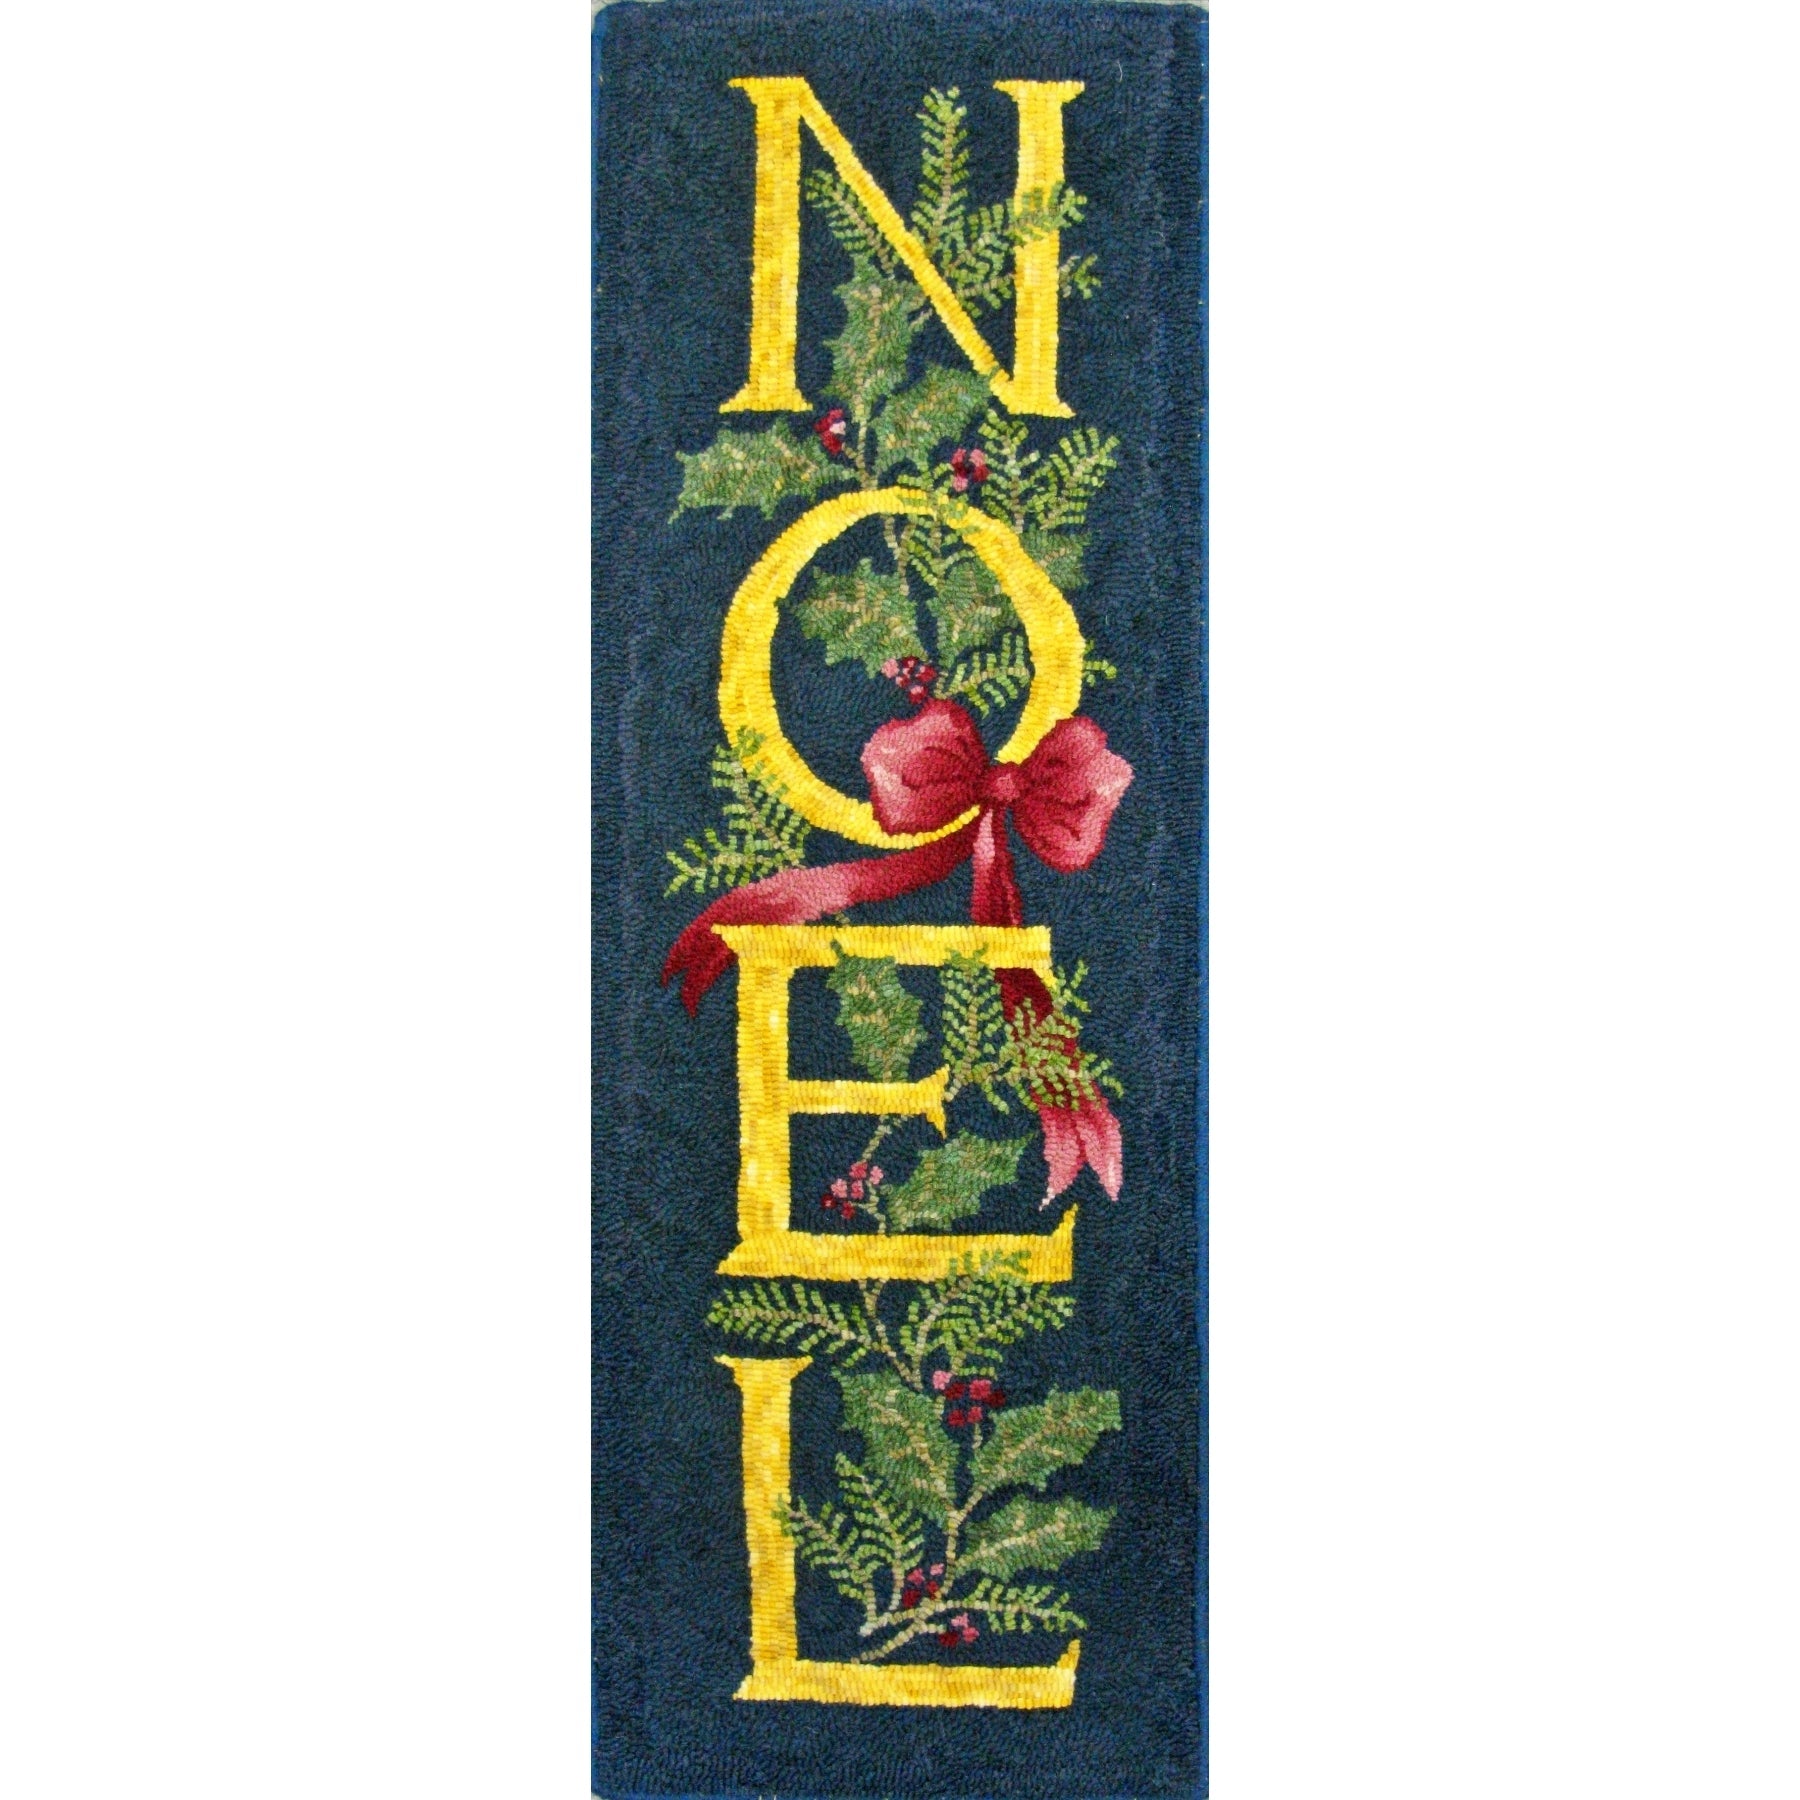 Noel, rug hooked by Linda Bell